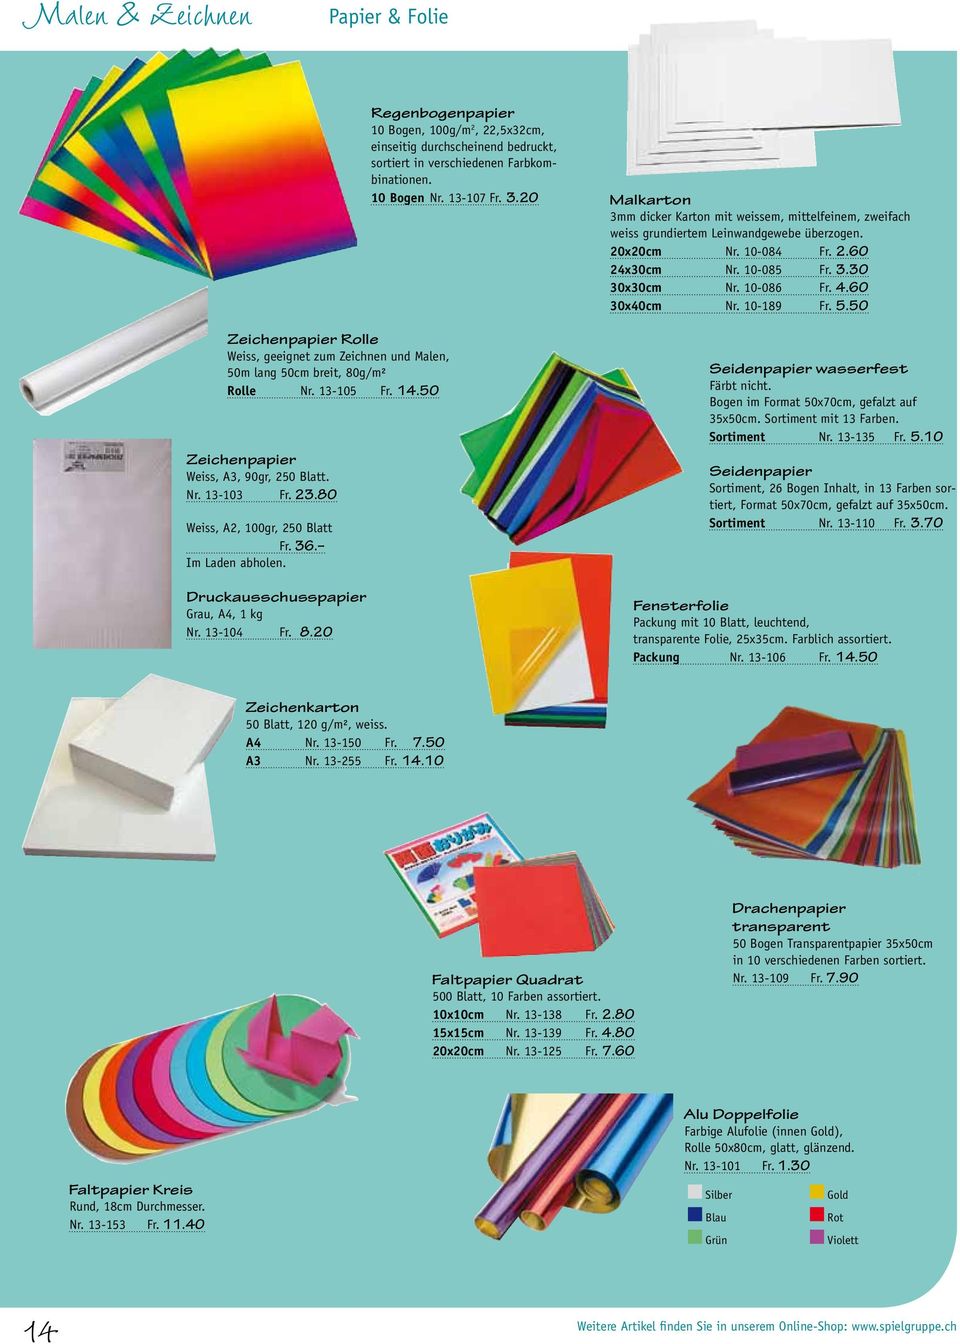 20 Regenbogenpapier 10 Bogen, 100g/m 2, 22,5x32cm, einseitig durchscheinend bedruckt, sortiert in verschiedenen Farbkombinationen. 10 Bogen Nr. 13-107 Fr. 3.